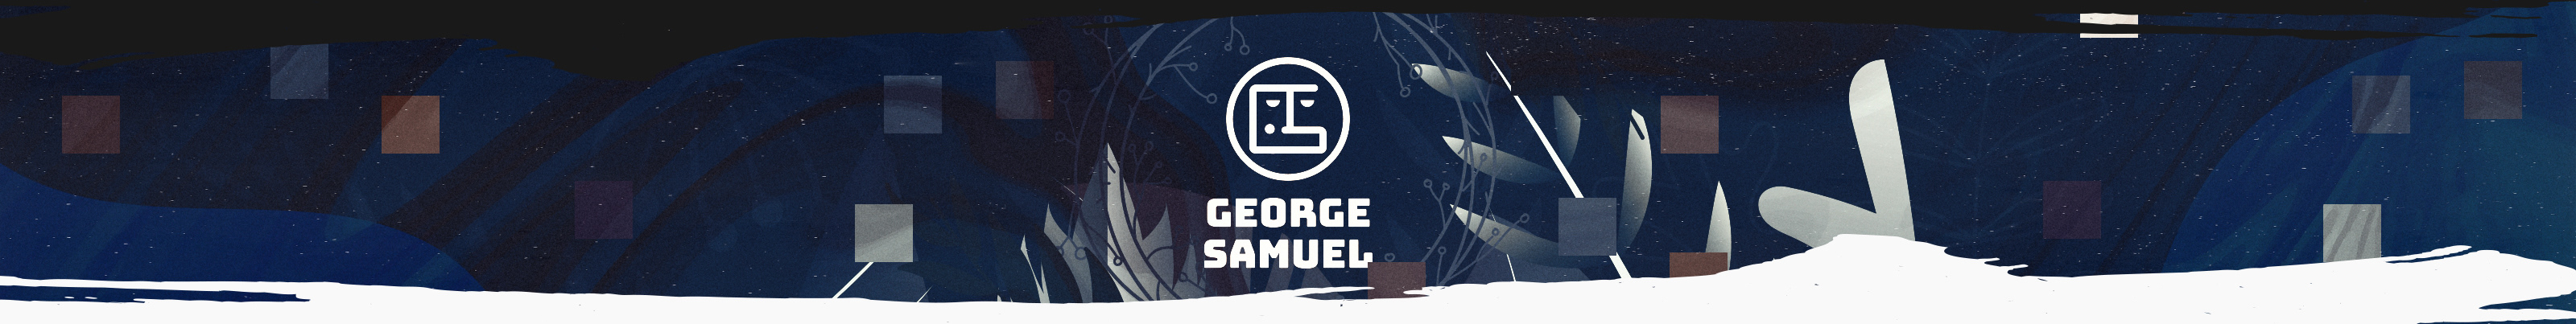 Profil-Banner von George Samuel